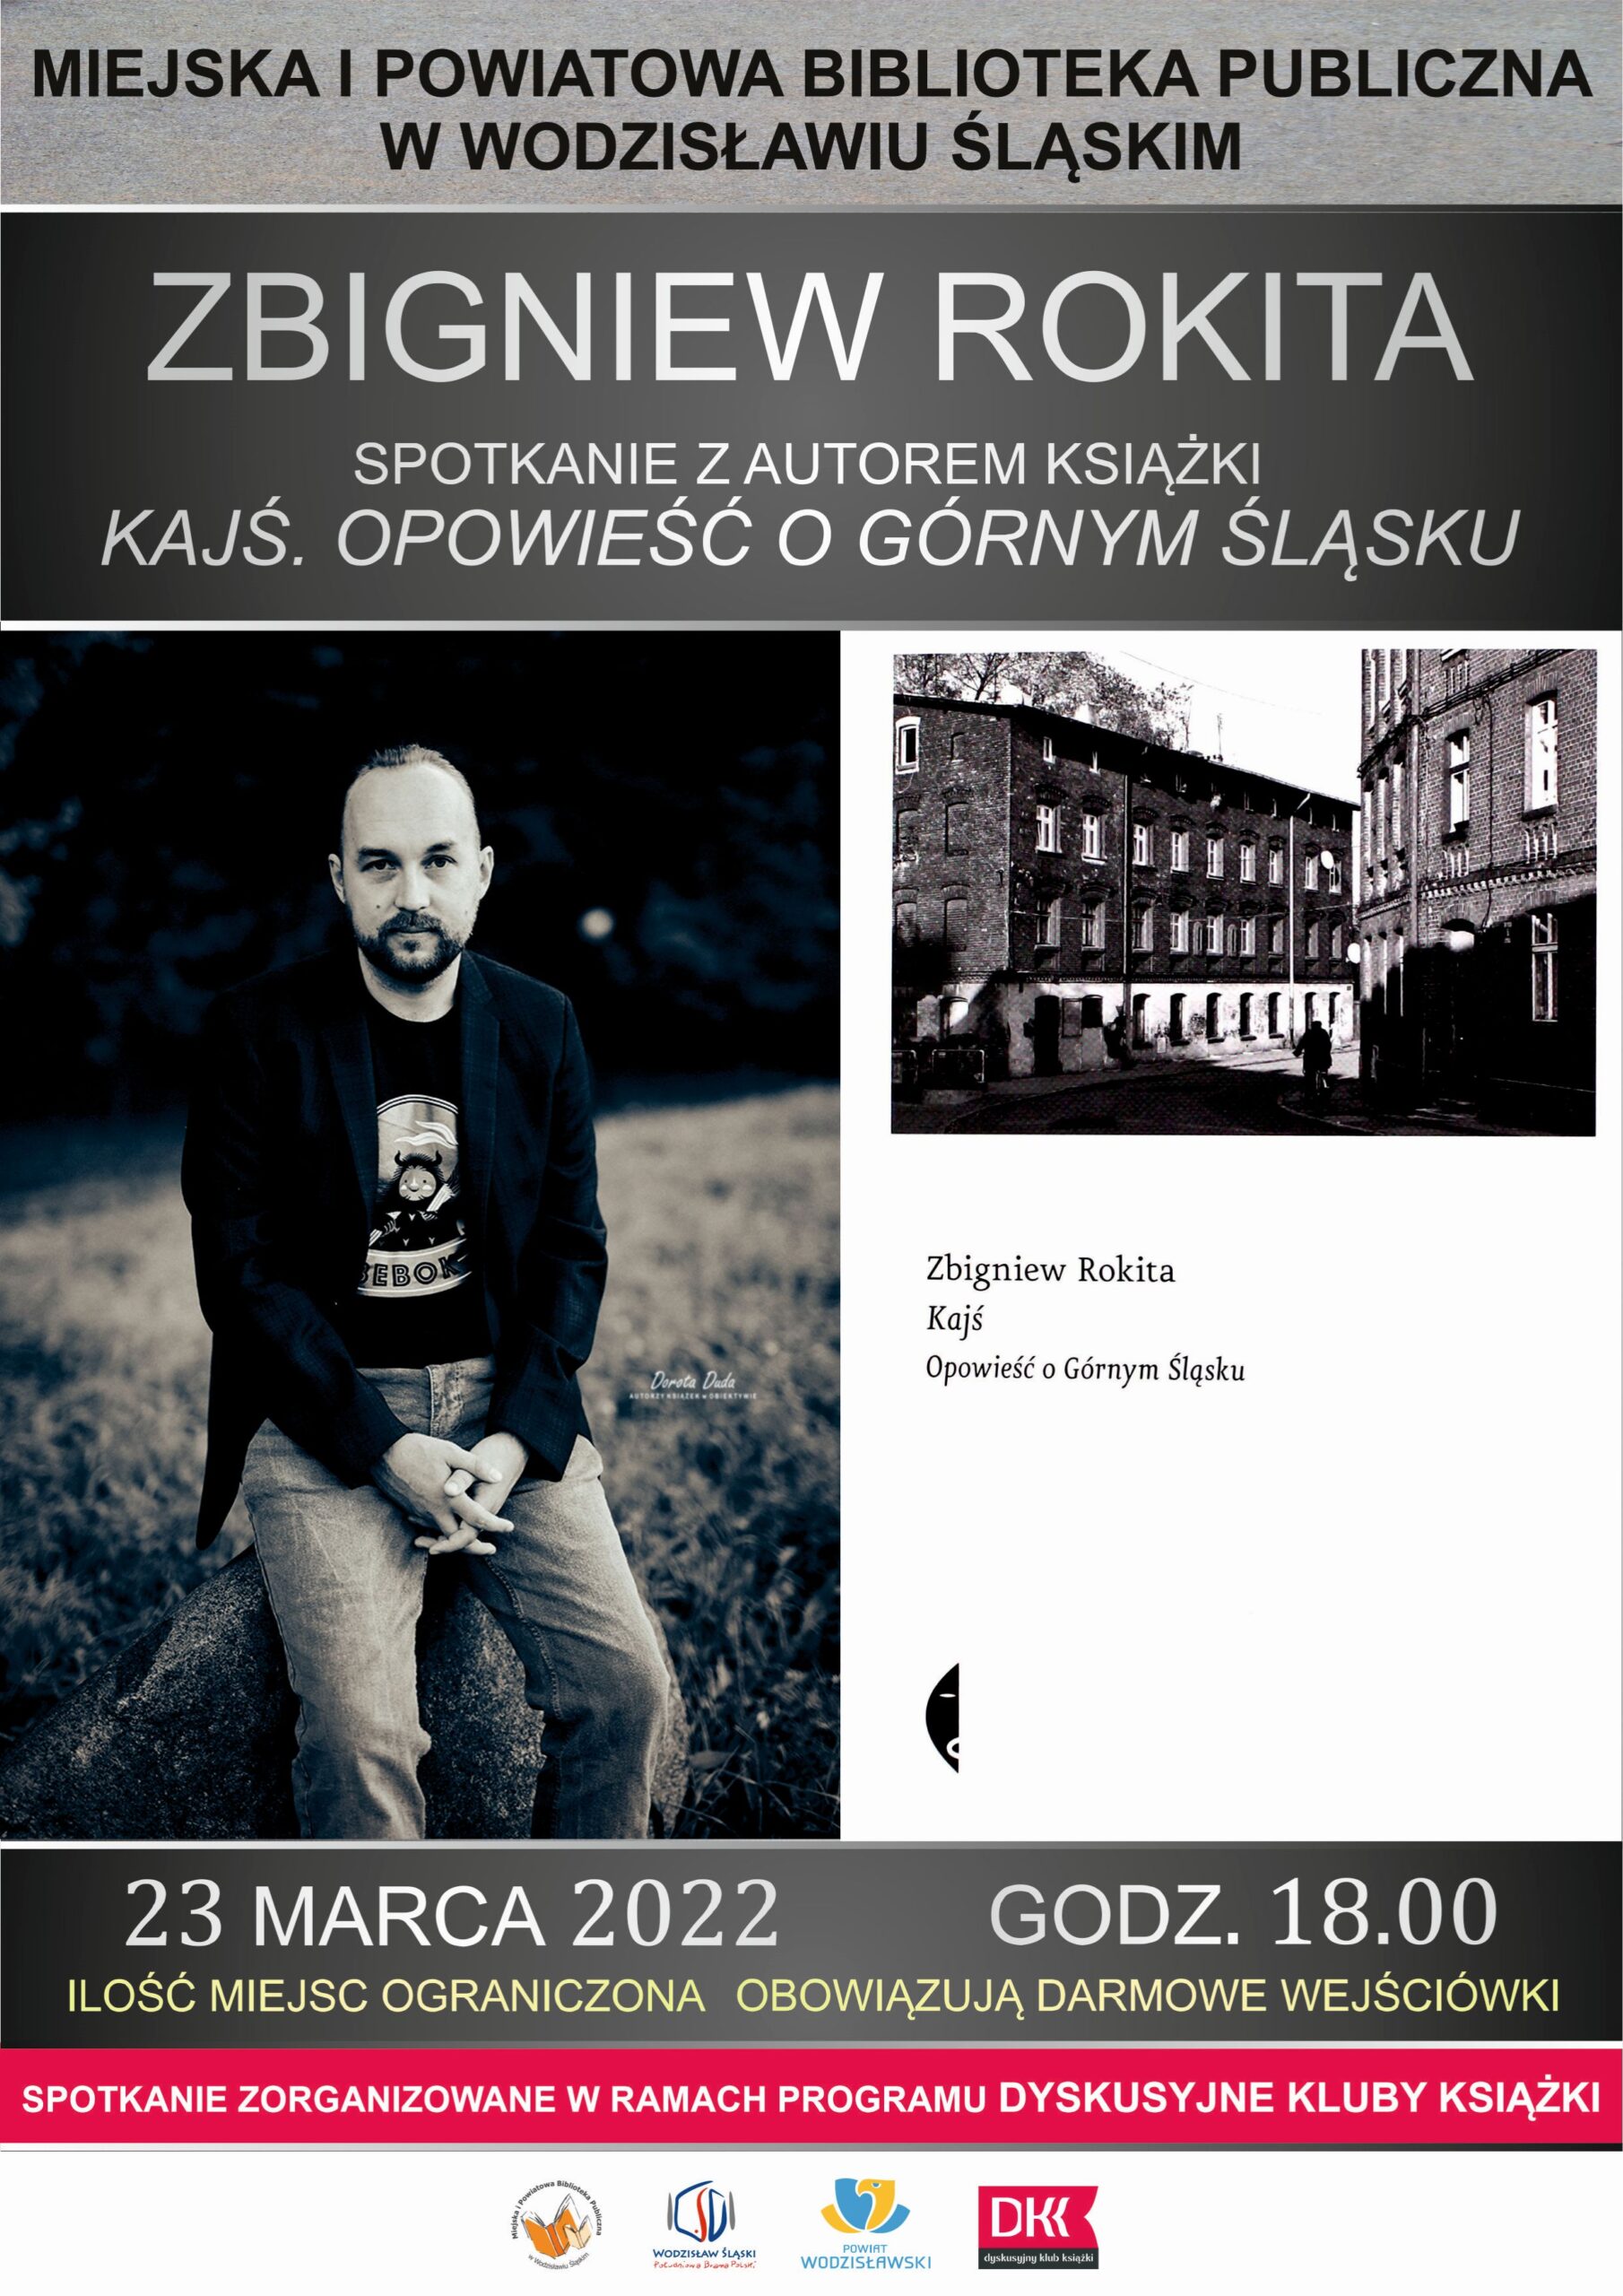 Zbigniew Rokita - spotkanie z autorem książki "Kajś. Opowieść o Górnym Śląsku" - 23 marca 2022, godz. 18.00